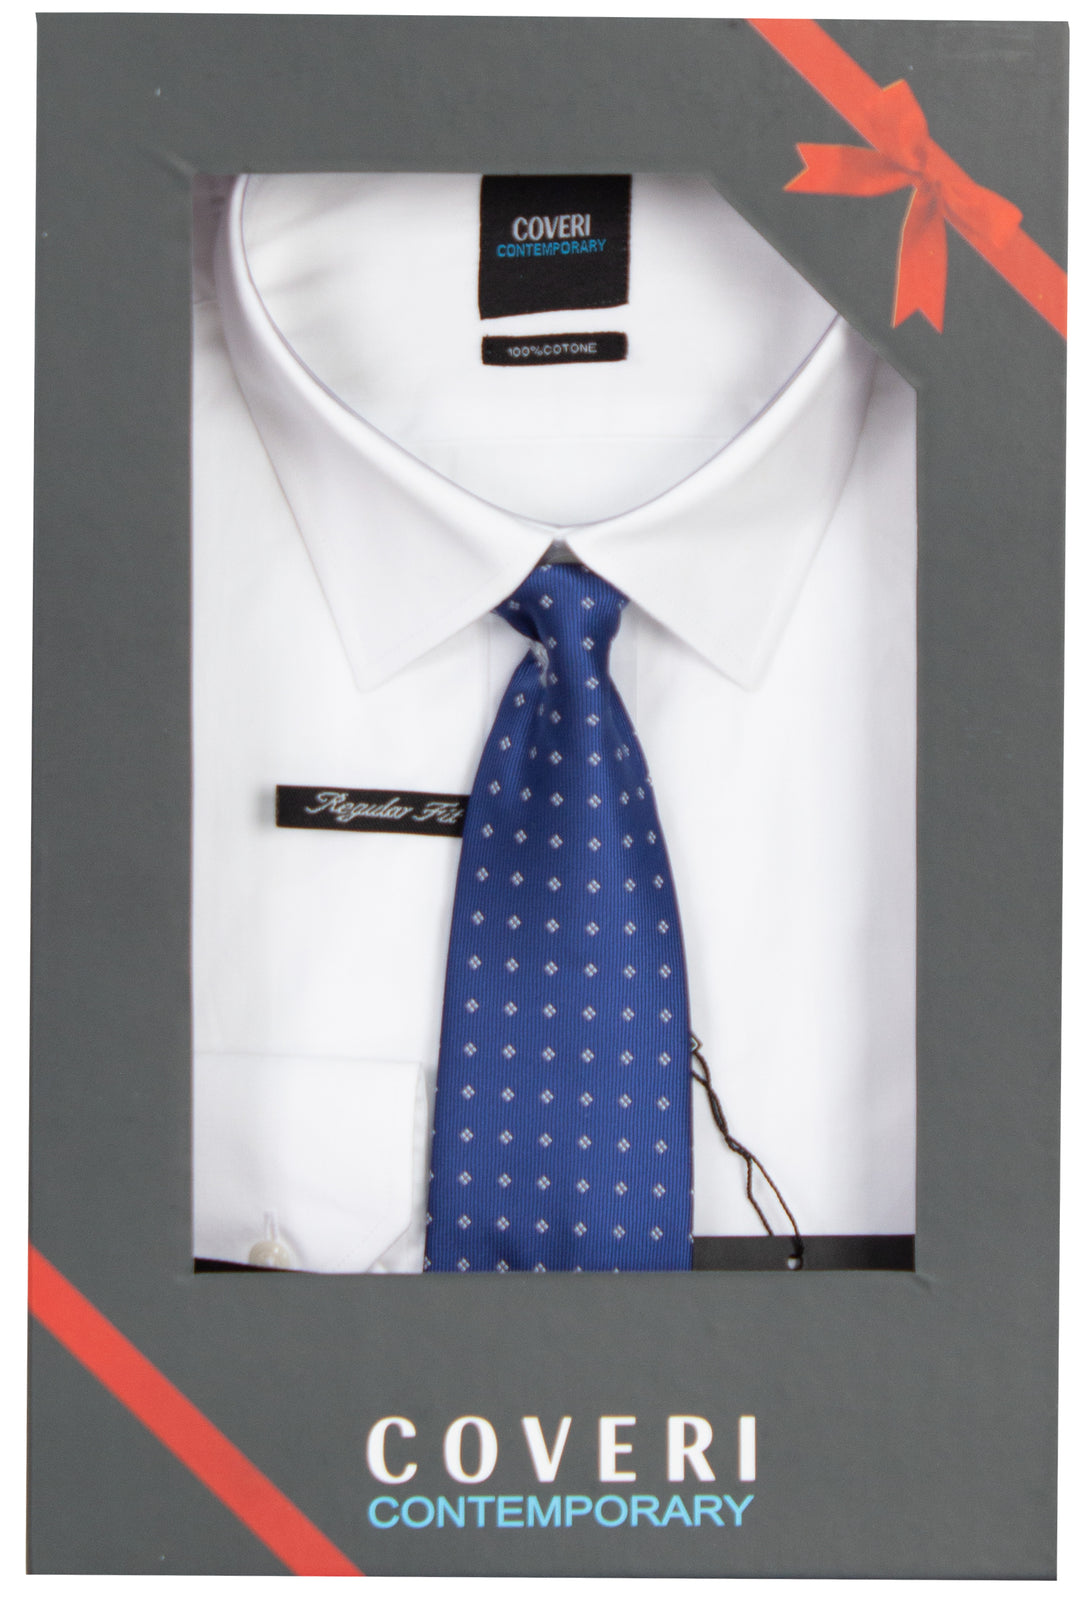 Camicia bianca collo classico con cravatta in scatola regalo